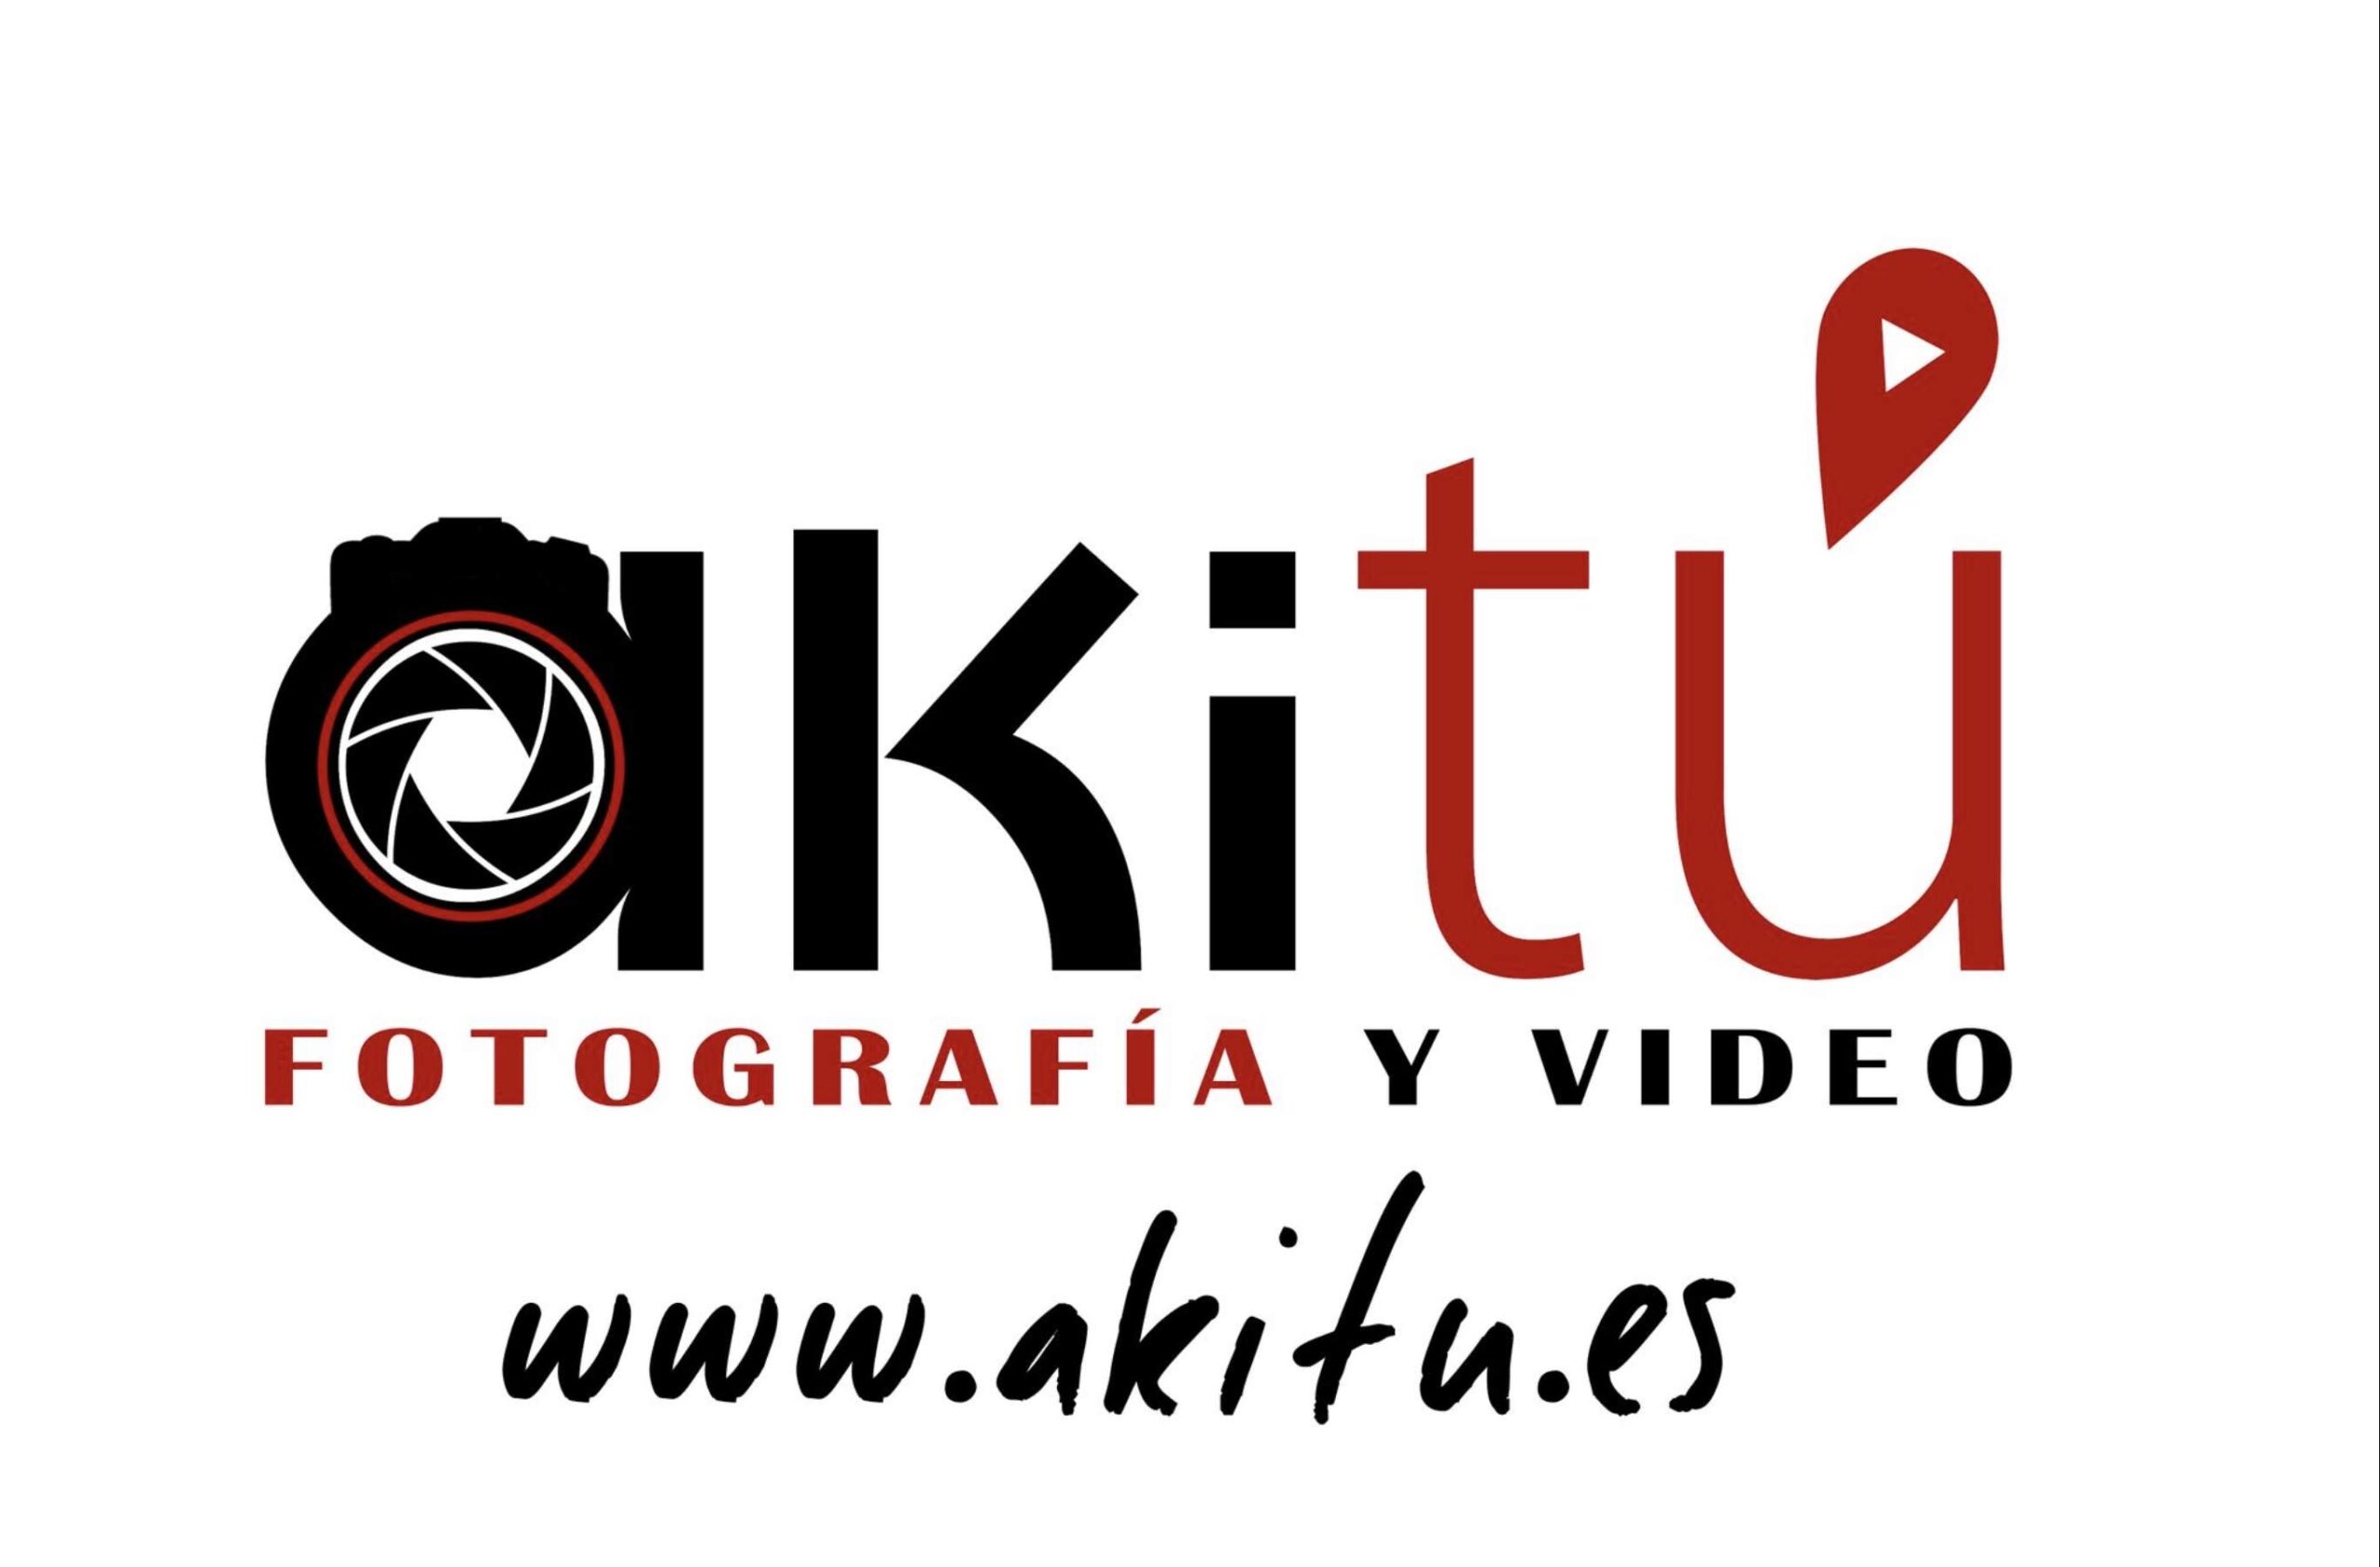 (c) Akitu.es